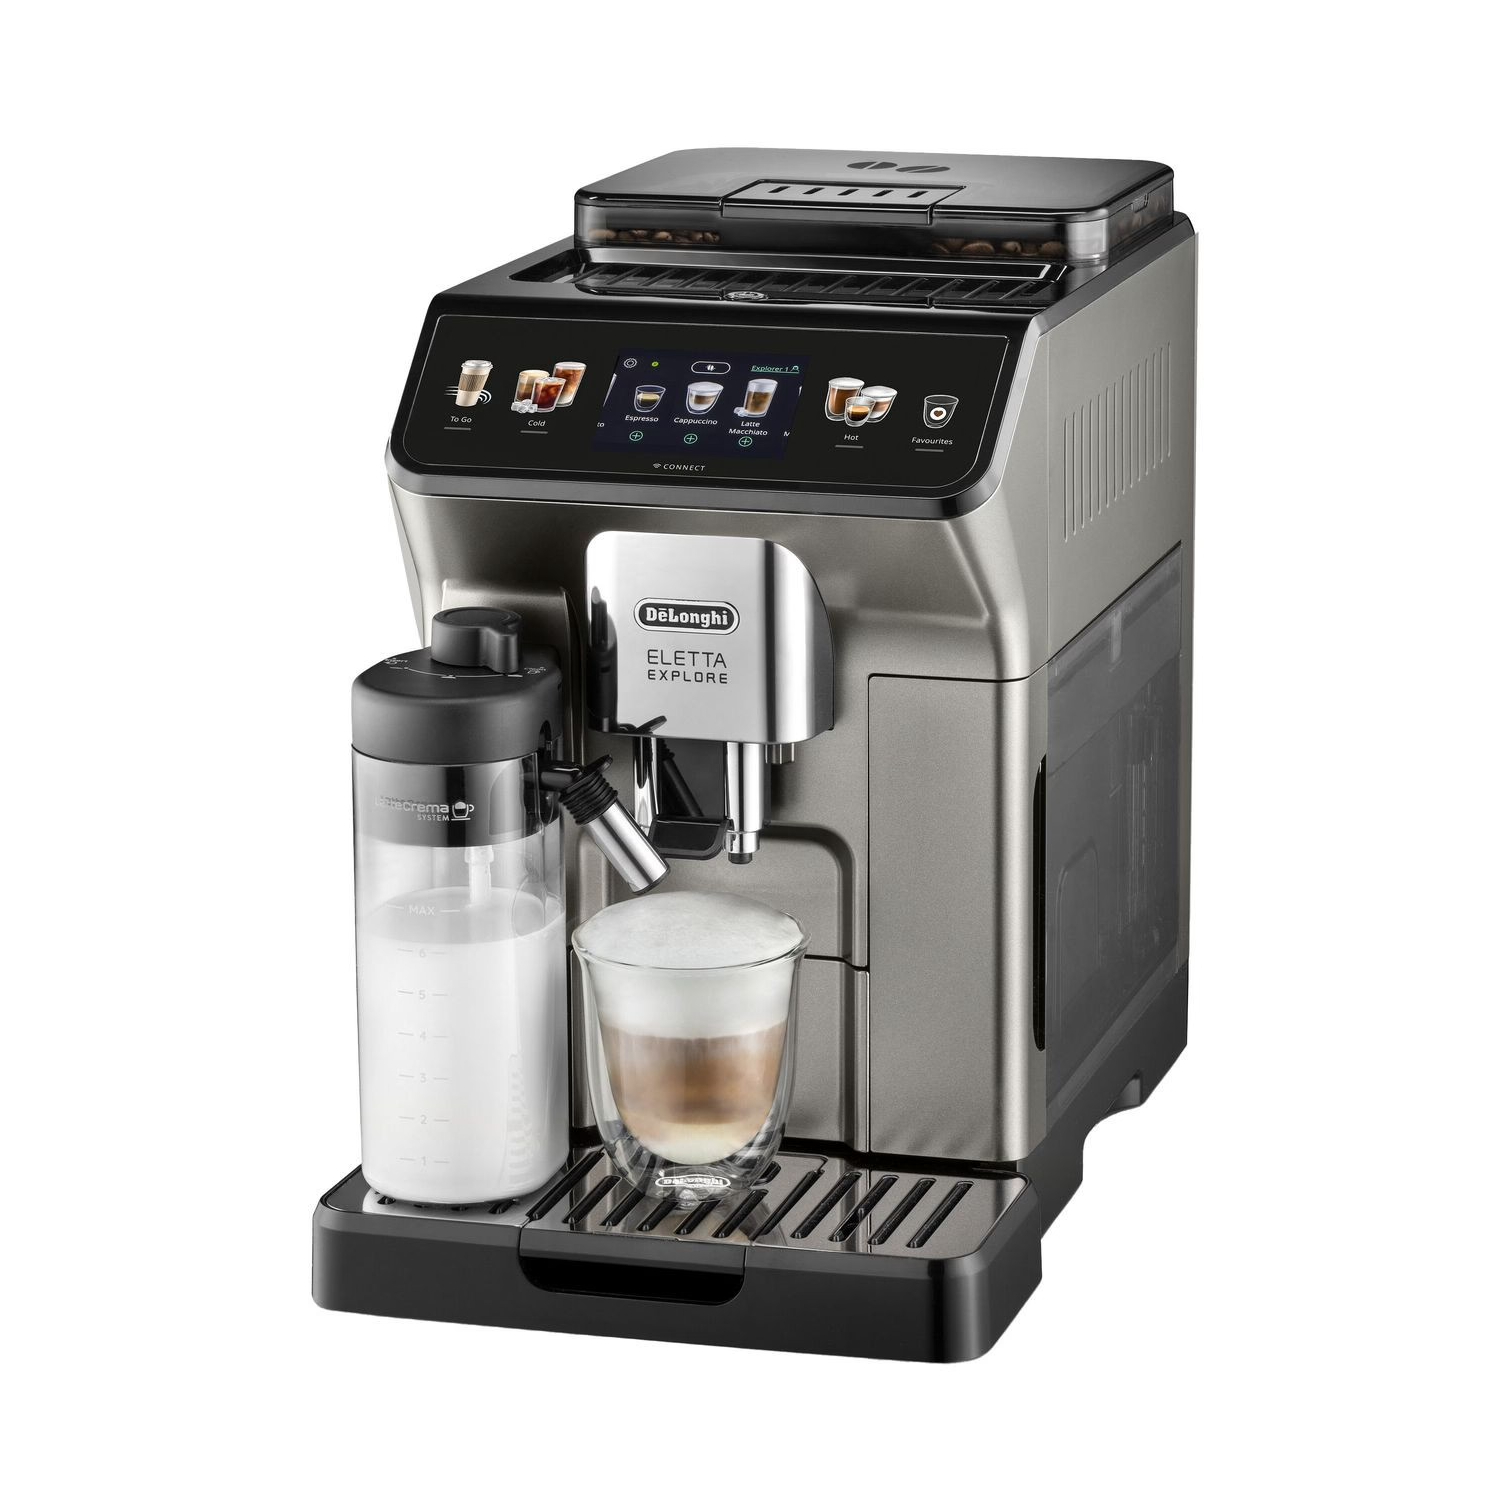 Автоматическая кофемашина DeLonghi Eletta Explore ECAM450.76.T, серебристый/черный цена и фото